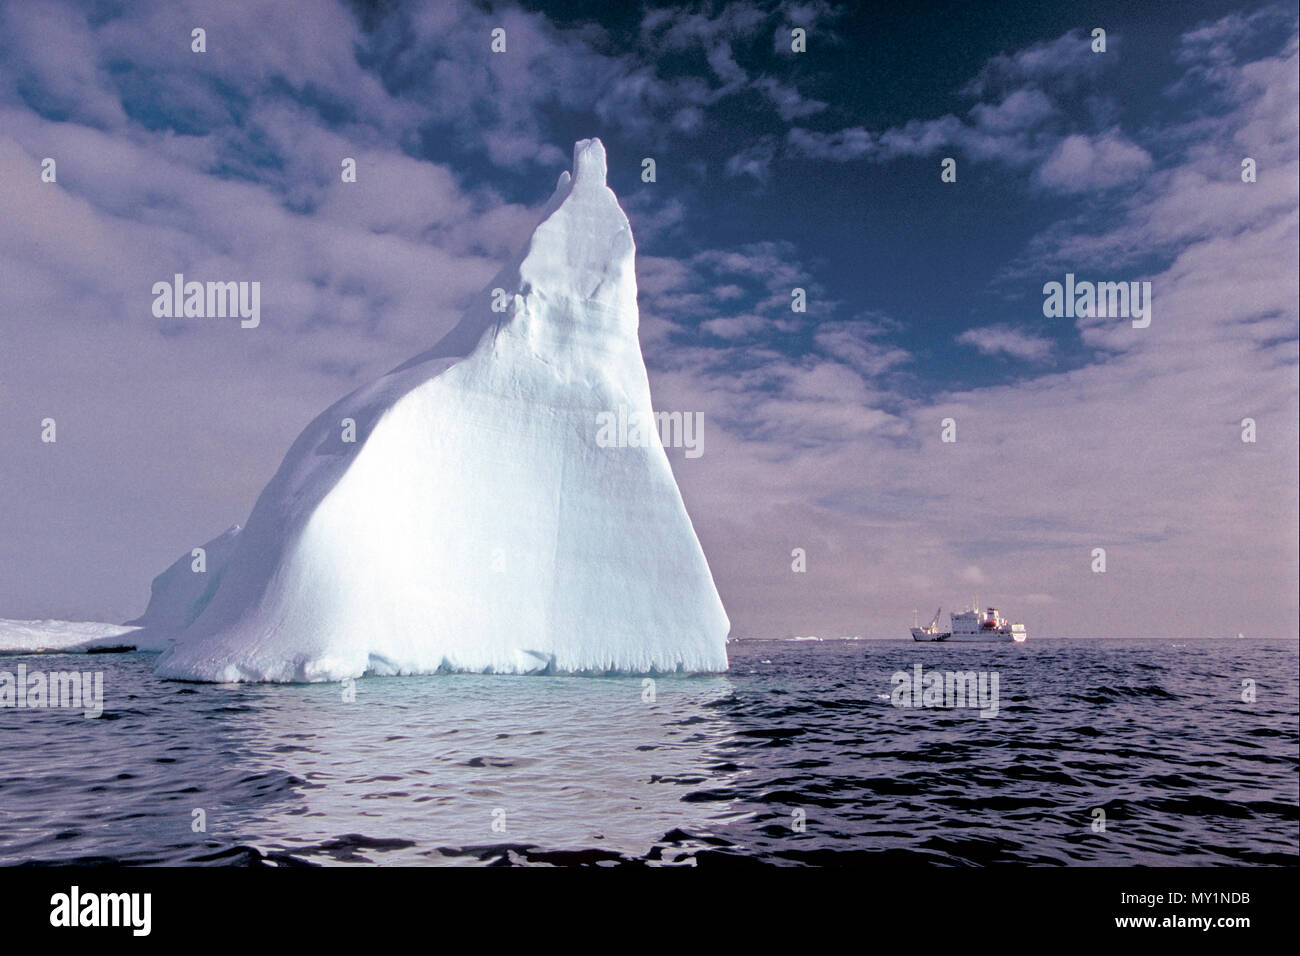 Treibender Eisberg in der Antarktis | Driften Eisberg in der Antarktis Stockfoto